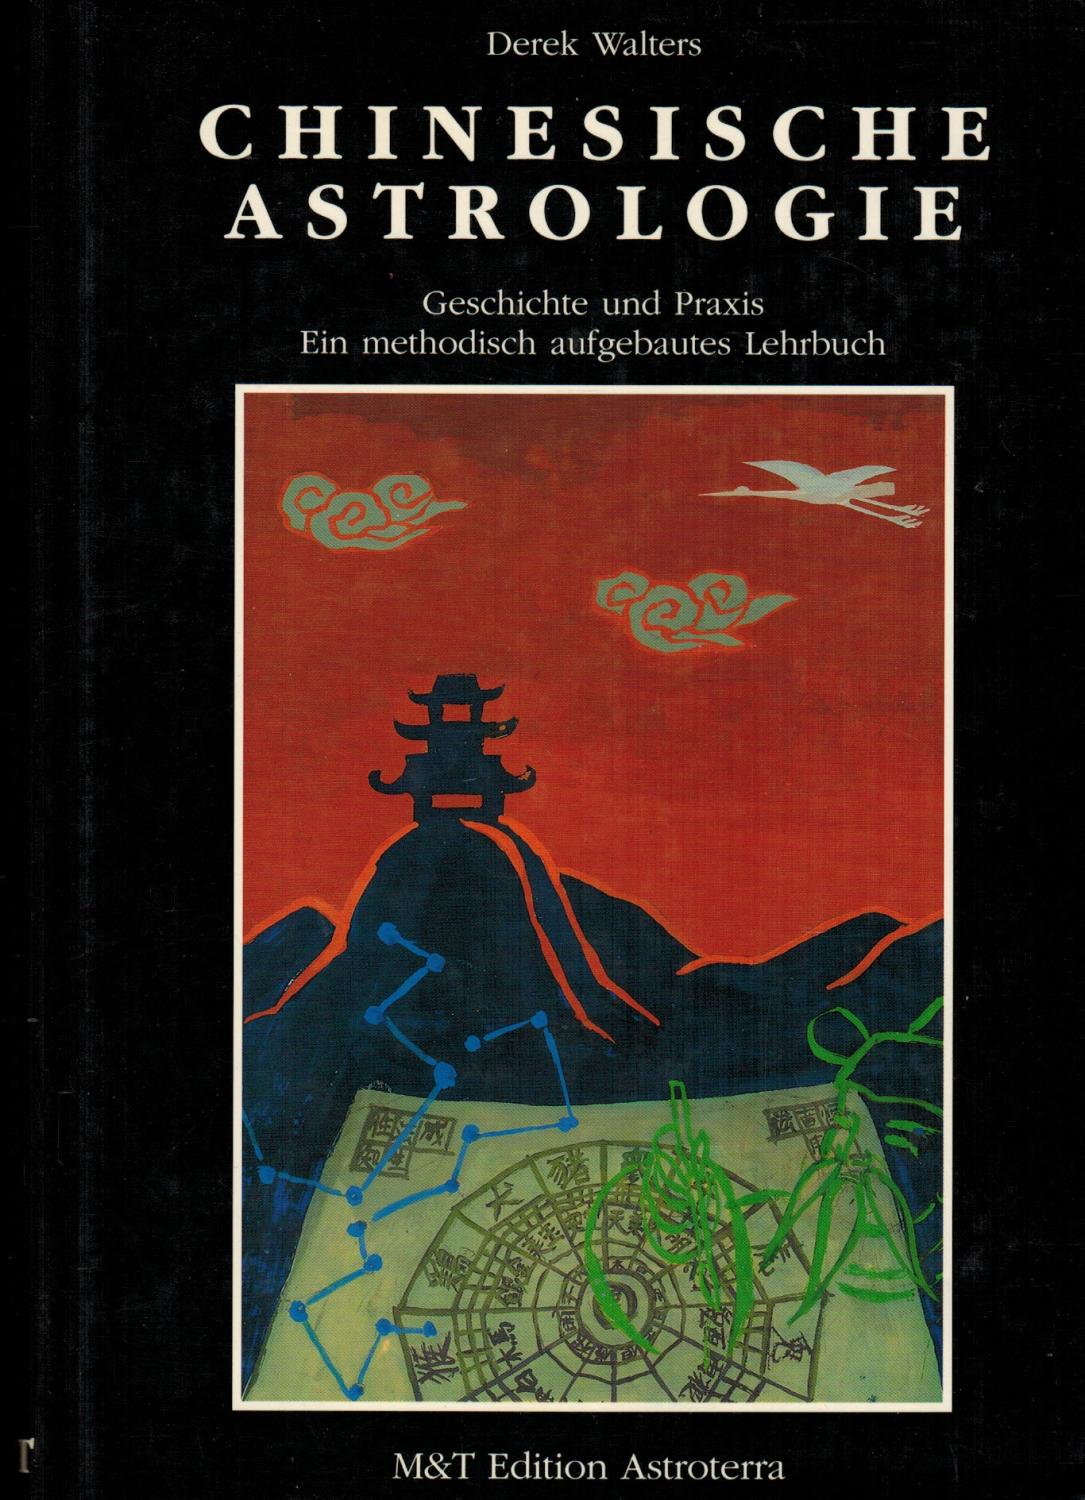 Chinesische Astrologie : Geschichte und Praxis ; ein methodisch aufgebautes Lehrbuch. Aus dem Engl. übers. von Ursula von Wiese, Edition Astroterra